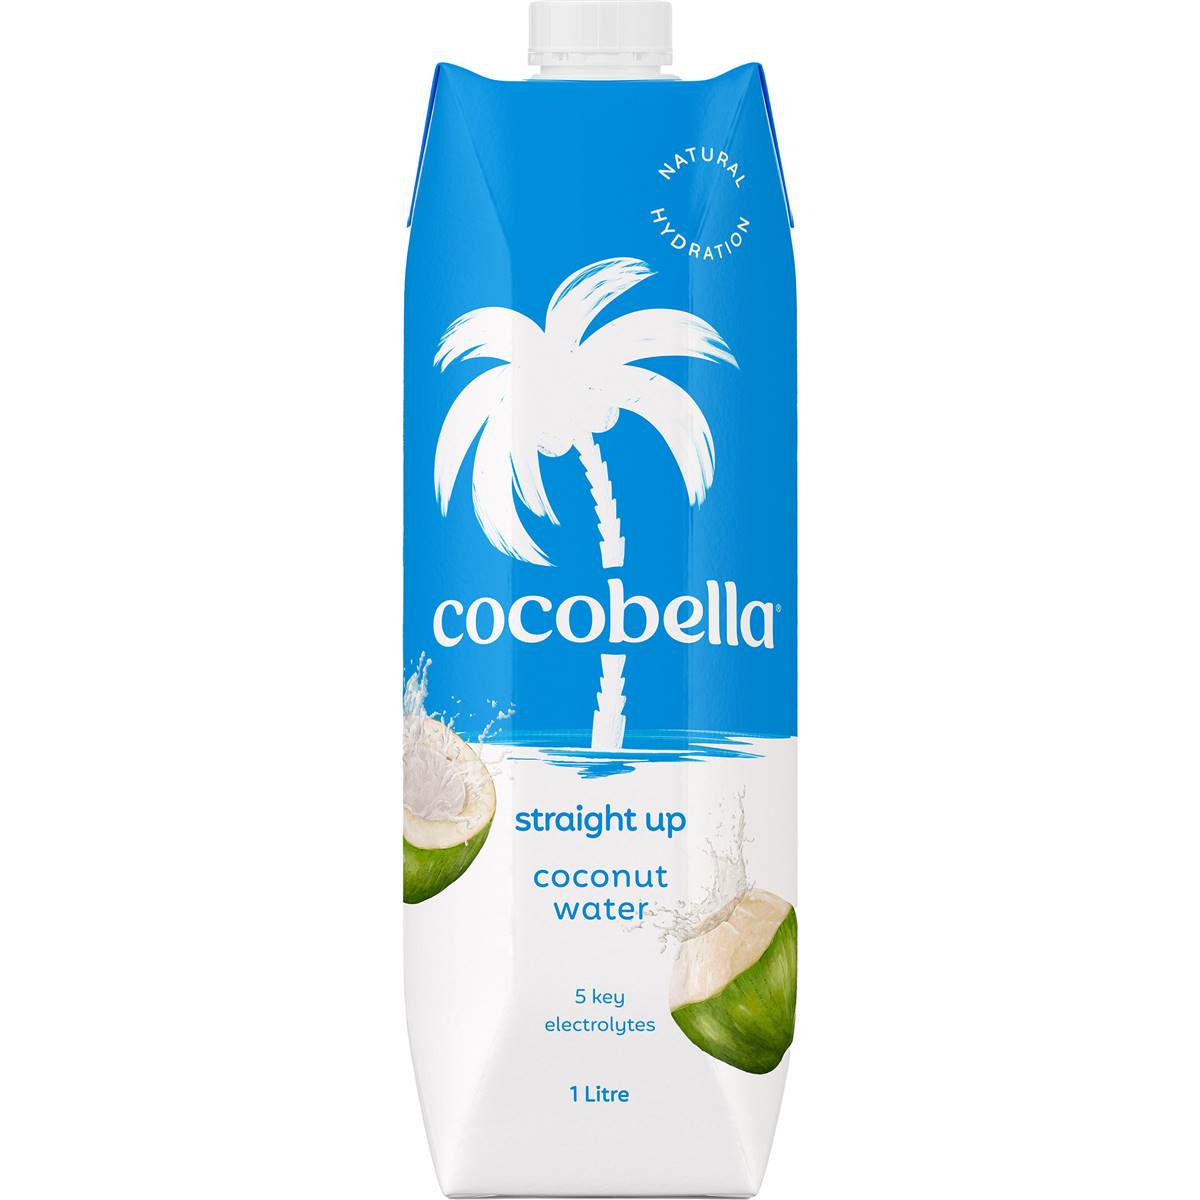 Cocobella Cocobella Straight Up Coconut Water